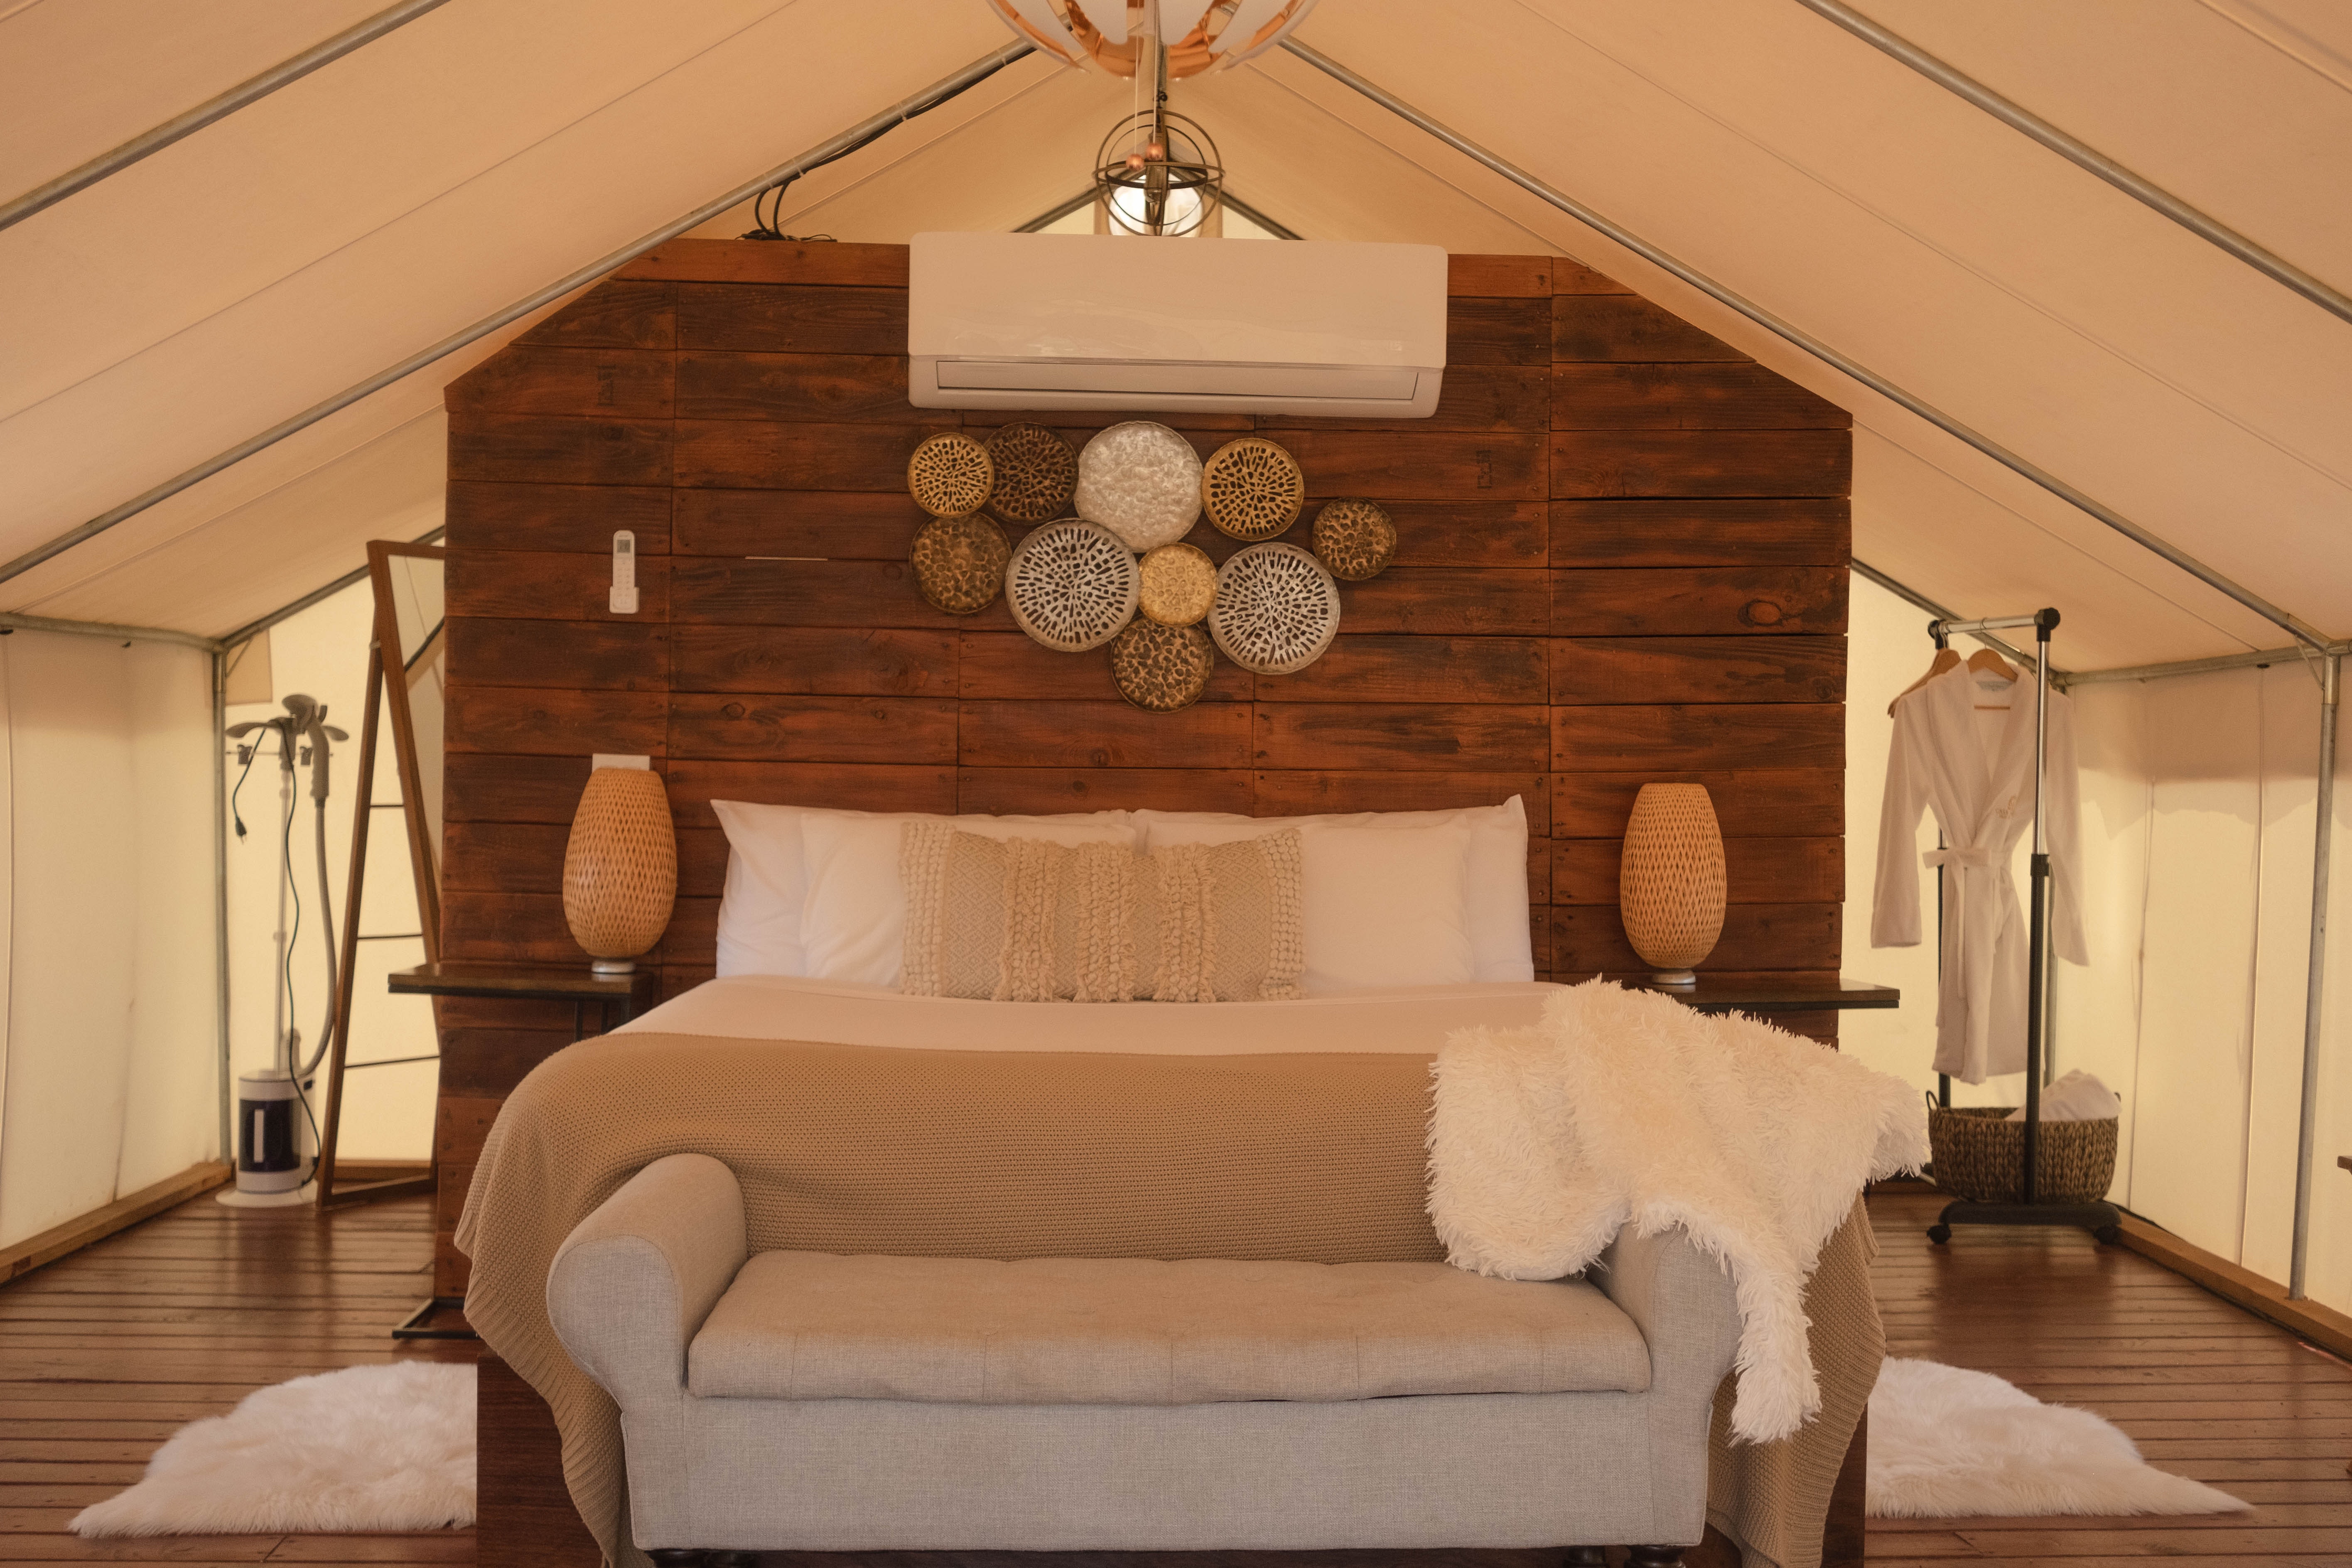 Wnętrza glampingowych namiotów często przypominają pokoje w kilkugwiazdkowych hotelach, fot. poglądowe pexels